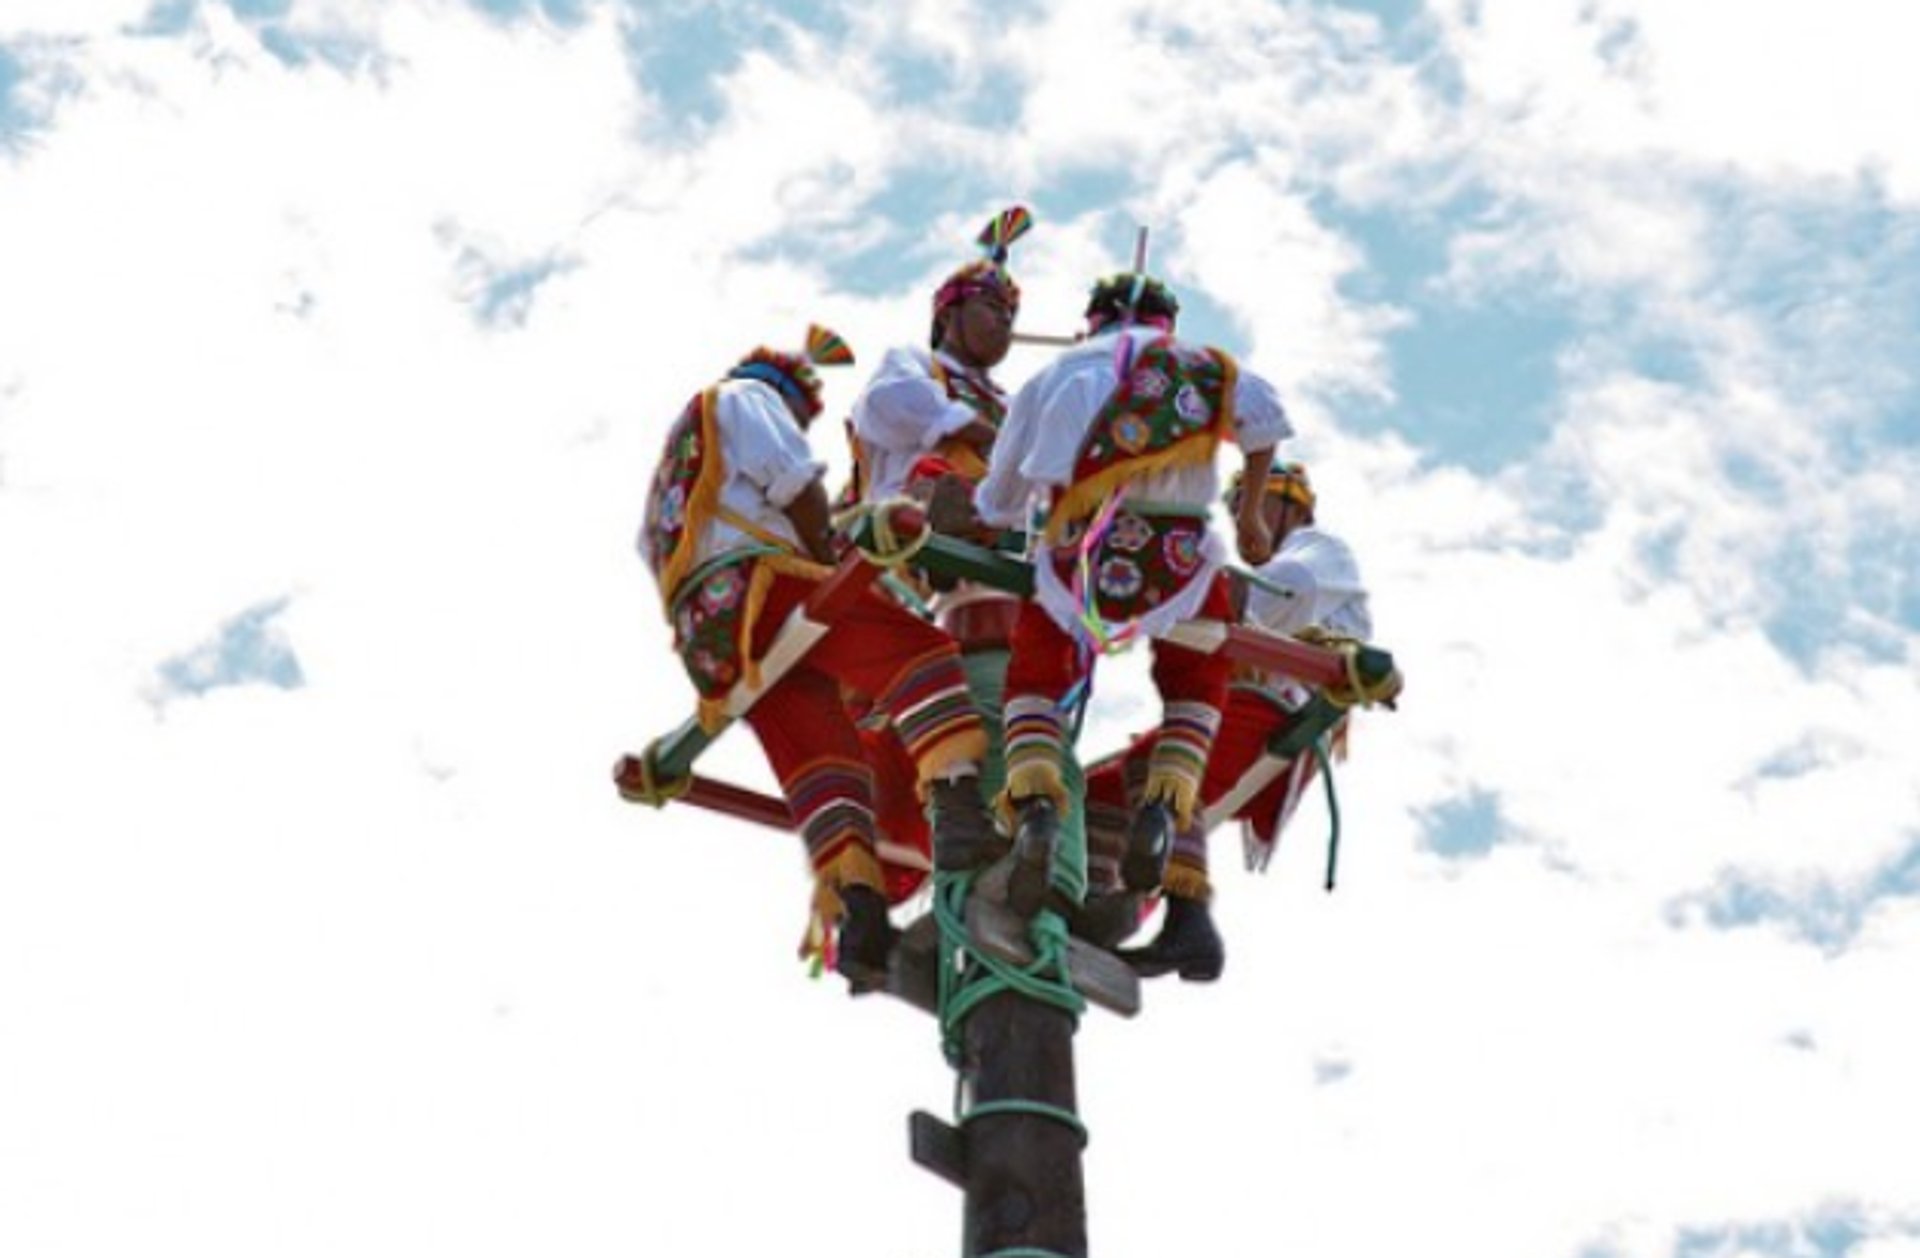 Mayan Pole Flyer Dancing or El Baile del Palo Volador